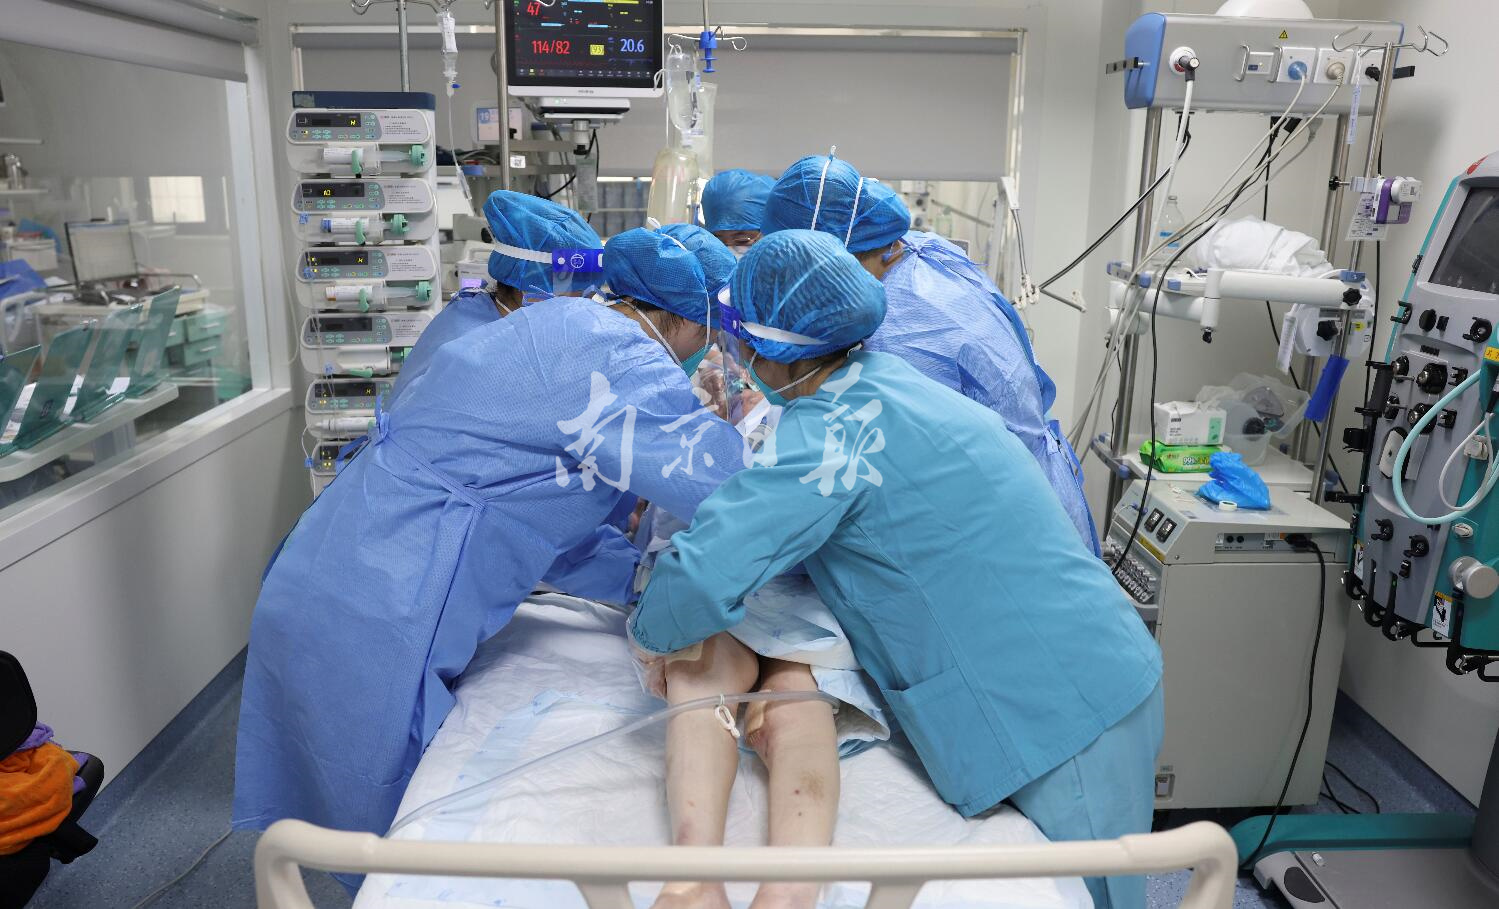 二〇二二年十二月二十九日，南京医科大学第二附属医院重症监护病房(ICU)，医护人员在抢救危重症患者。